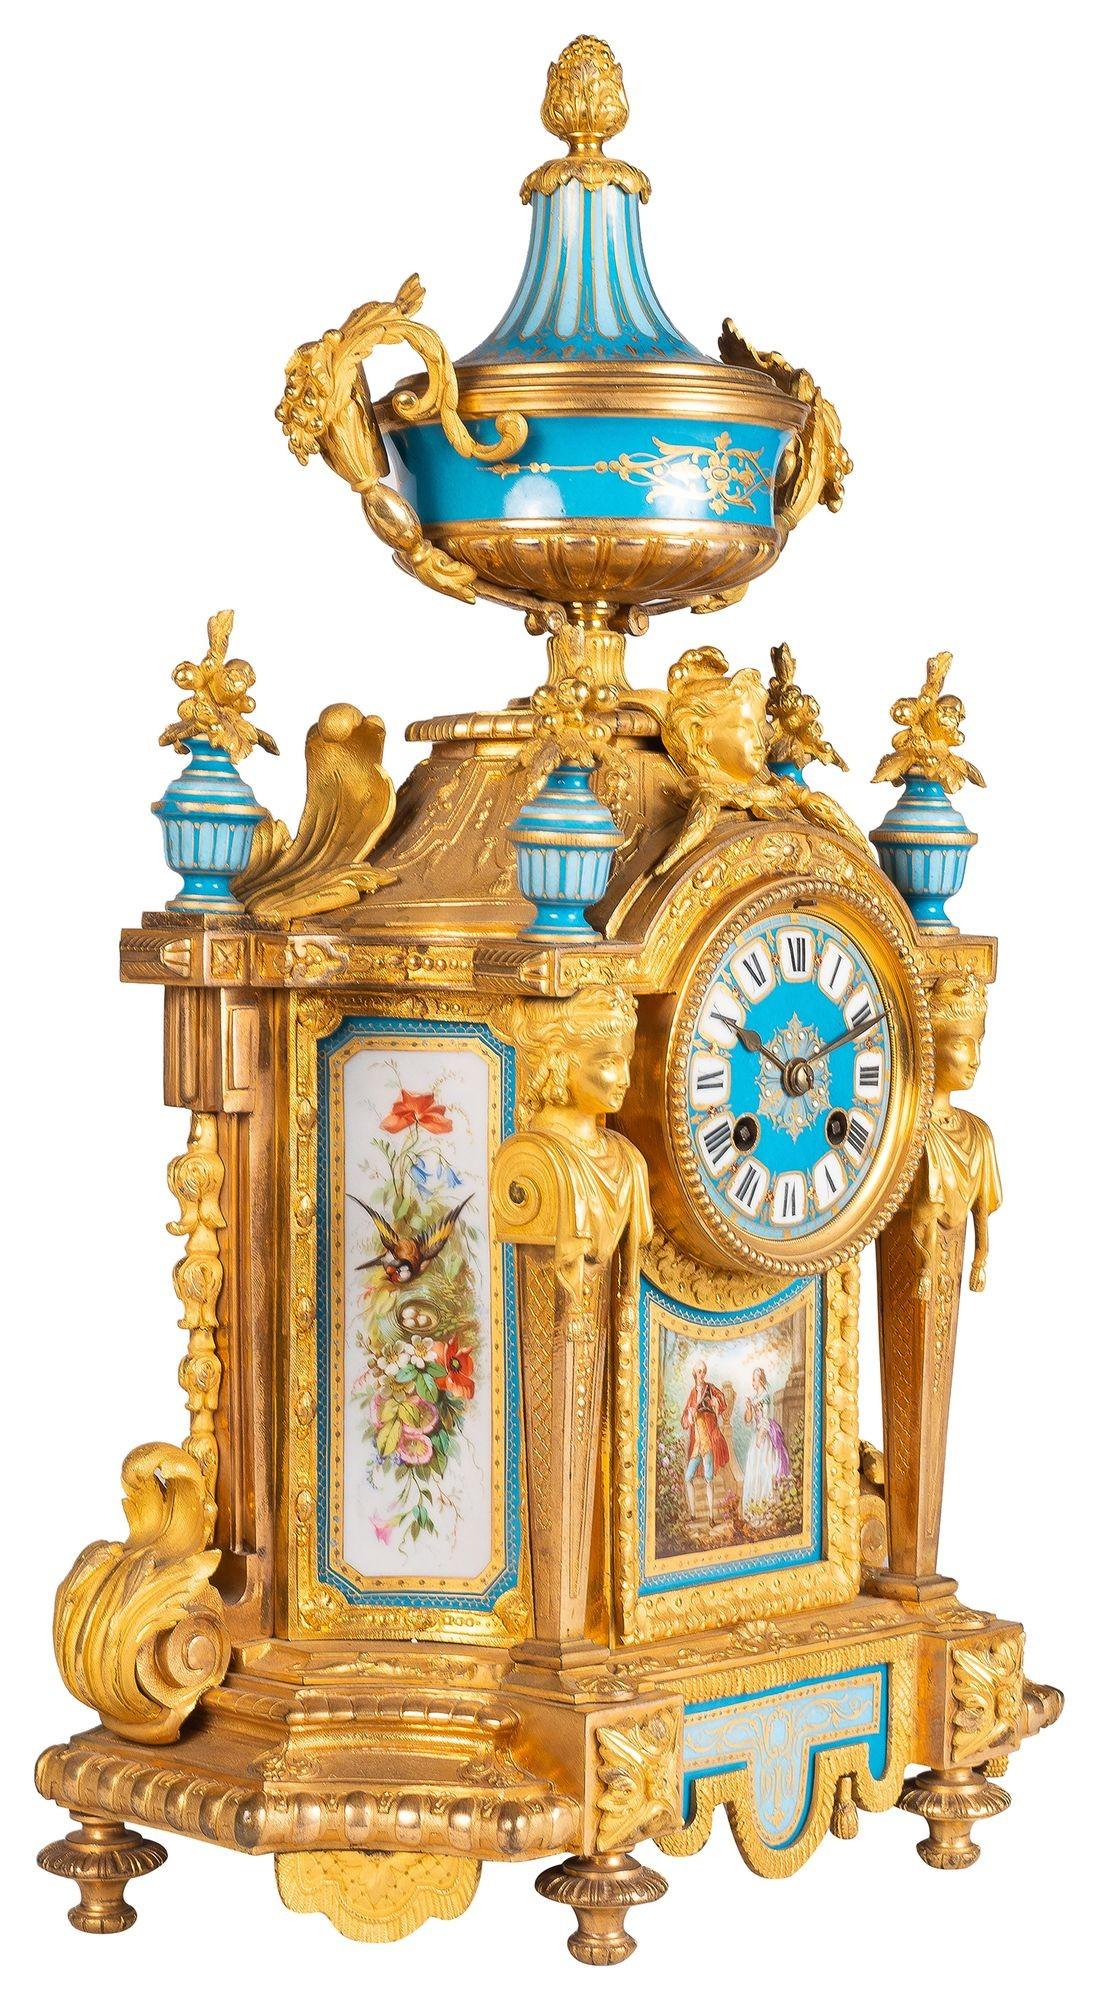 Eine sehr beeindruckende 19. Jahrhundert Französisch Serves Stil Porzellan und vergoldet Ormolu Uhr Garnitur. Türkisfarbener Grund mit handgemalten romantischen Szenen auf dem Porzellan, Monopodien aus Ormolu auf beiden Seiten des Ziffernblatts, ein